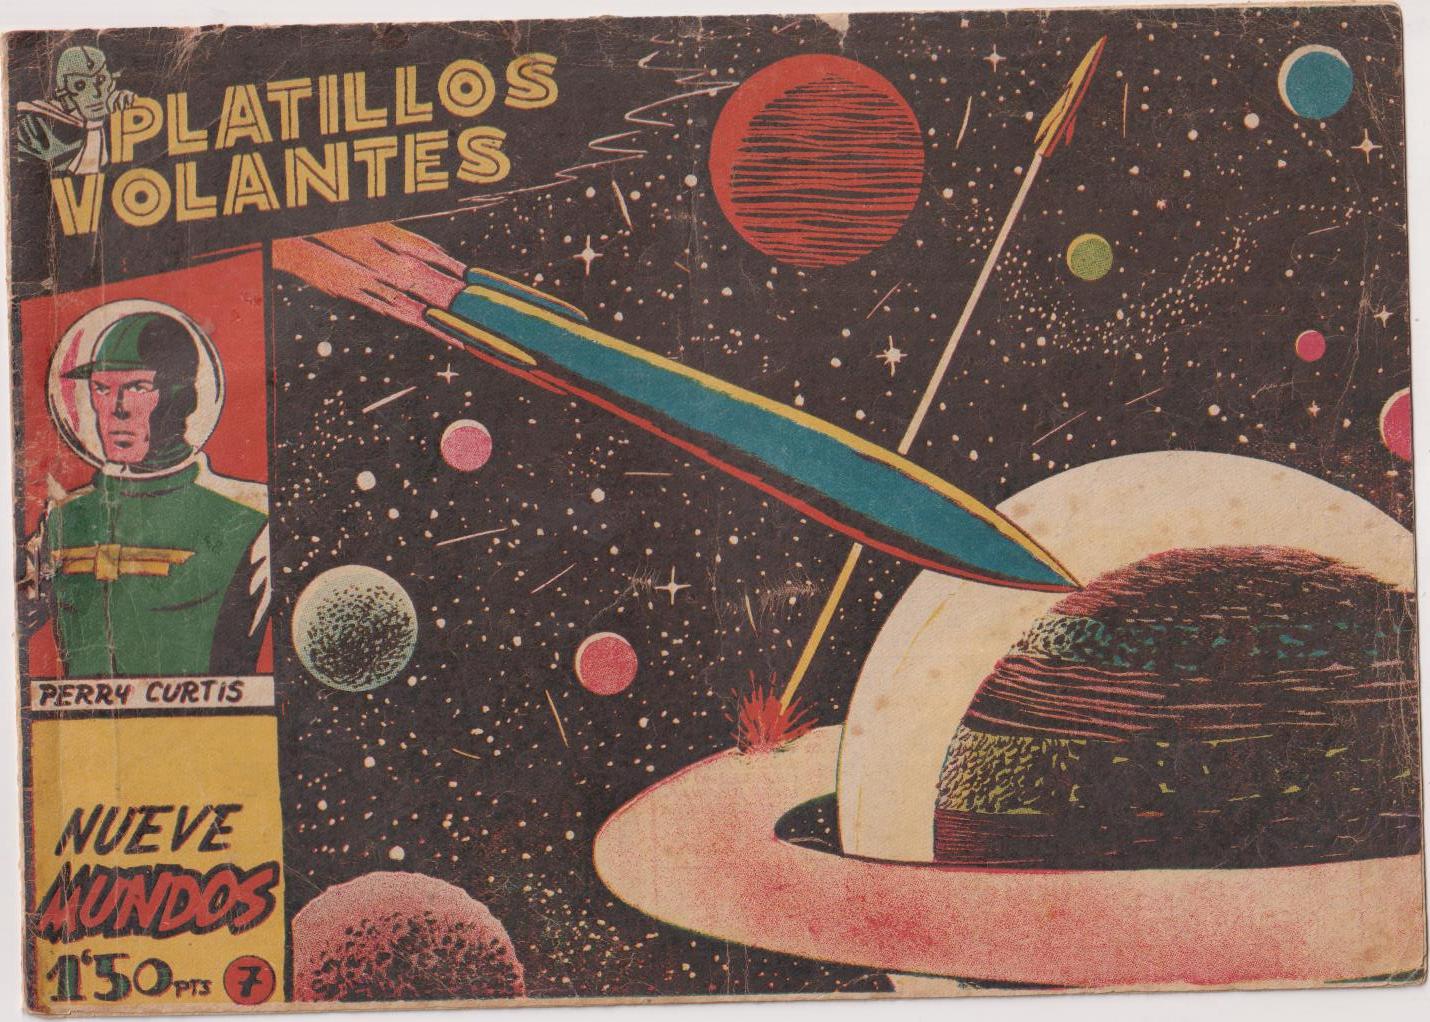 Platillos Volantes nº 7. Ricart 1955